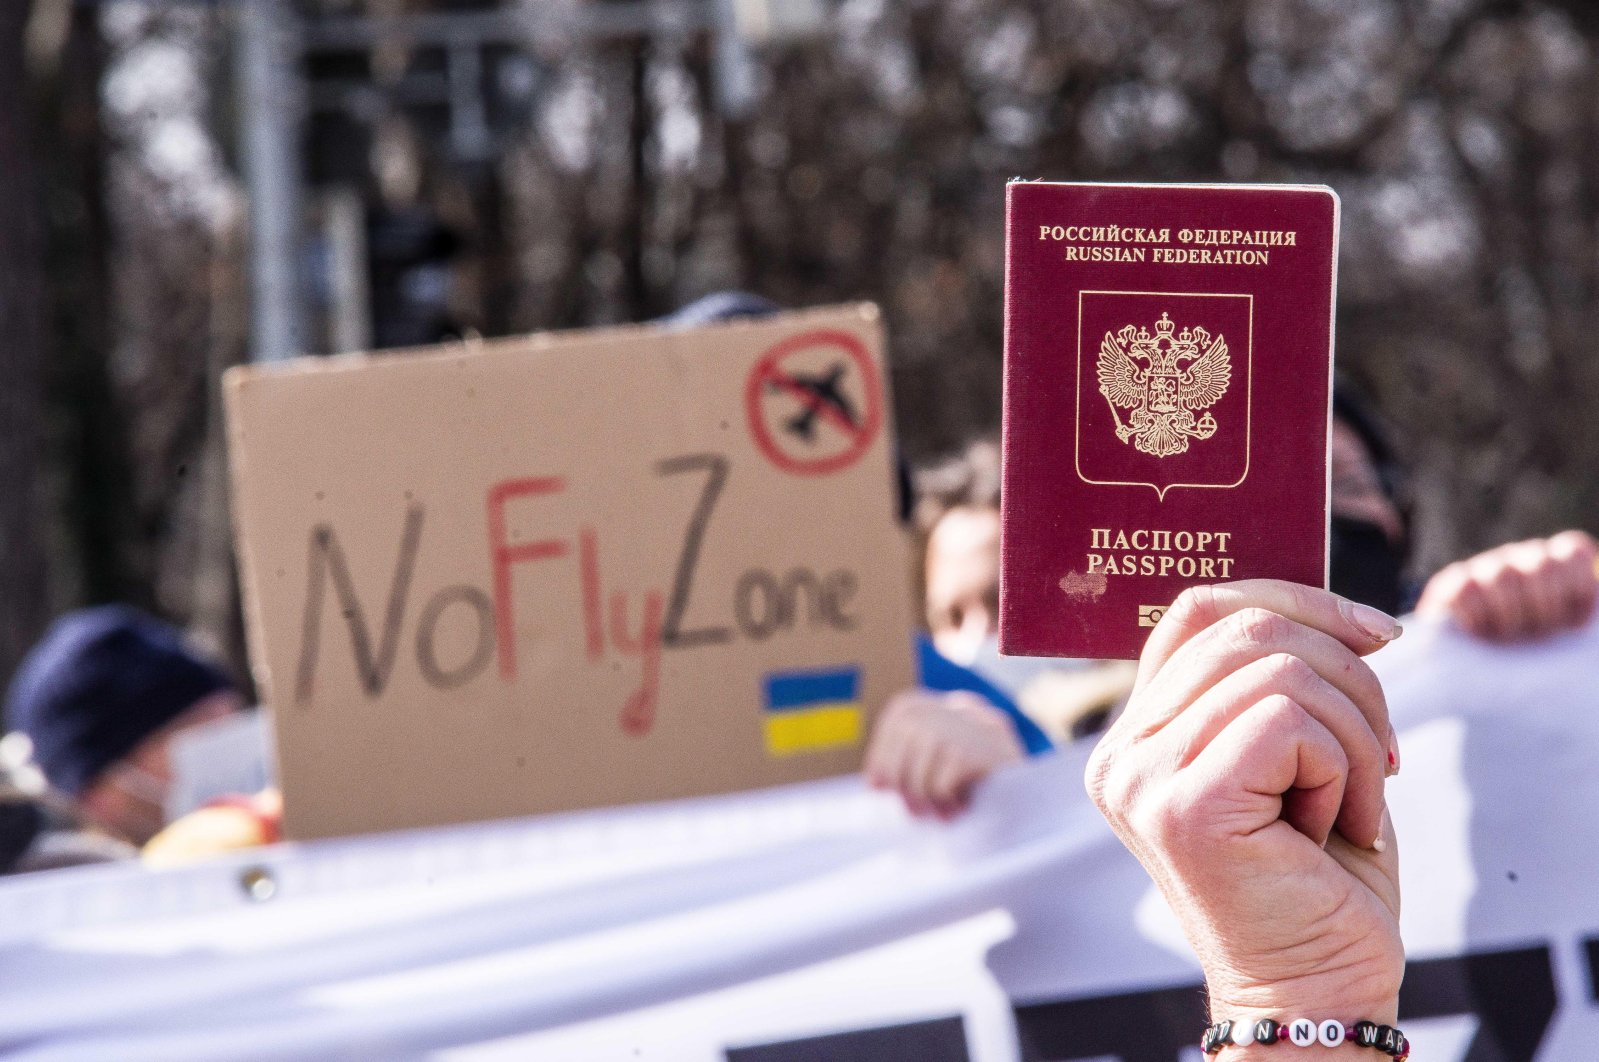 ‘Sinyal yang jelas’: Kepresidenan UE mendukung larangan visa untuk orang Rusia